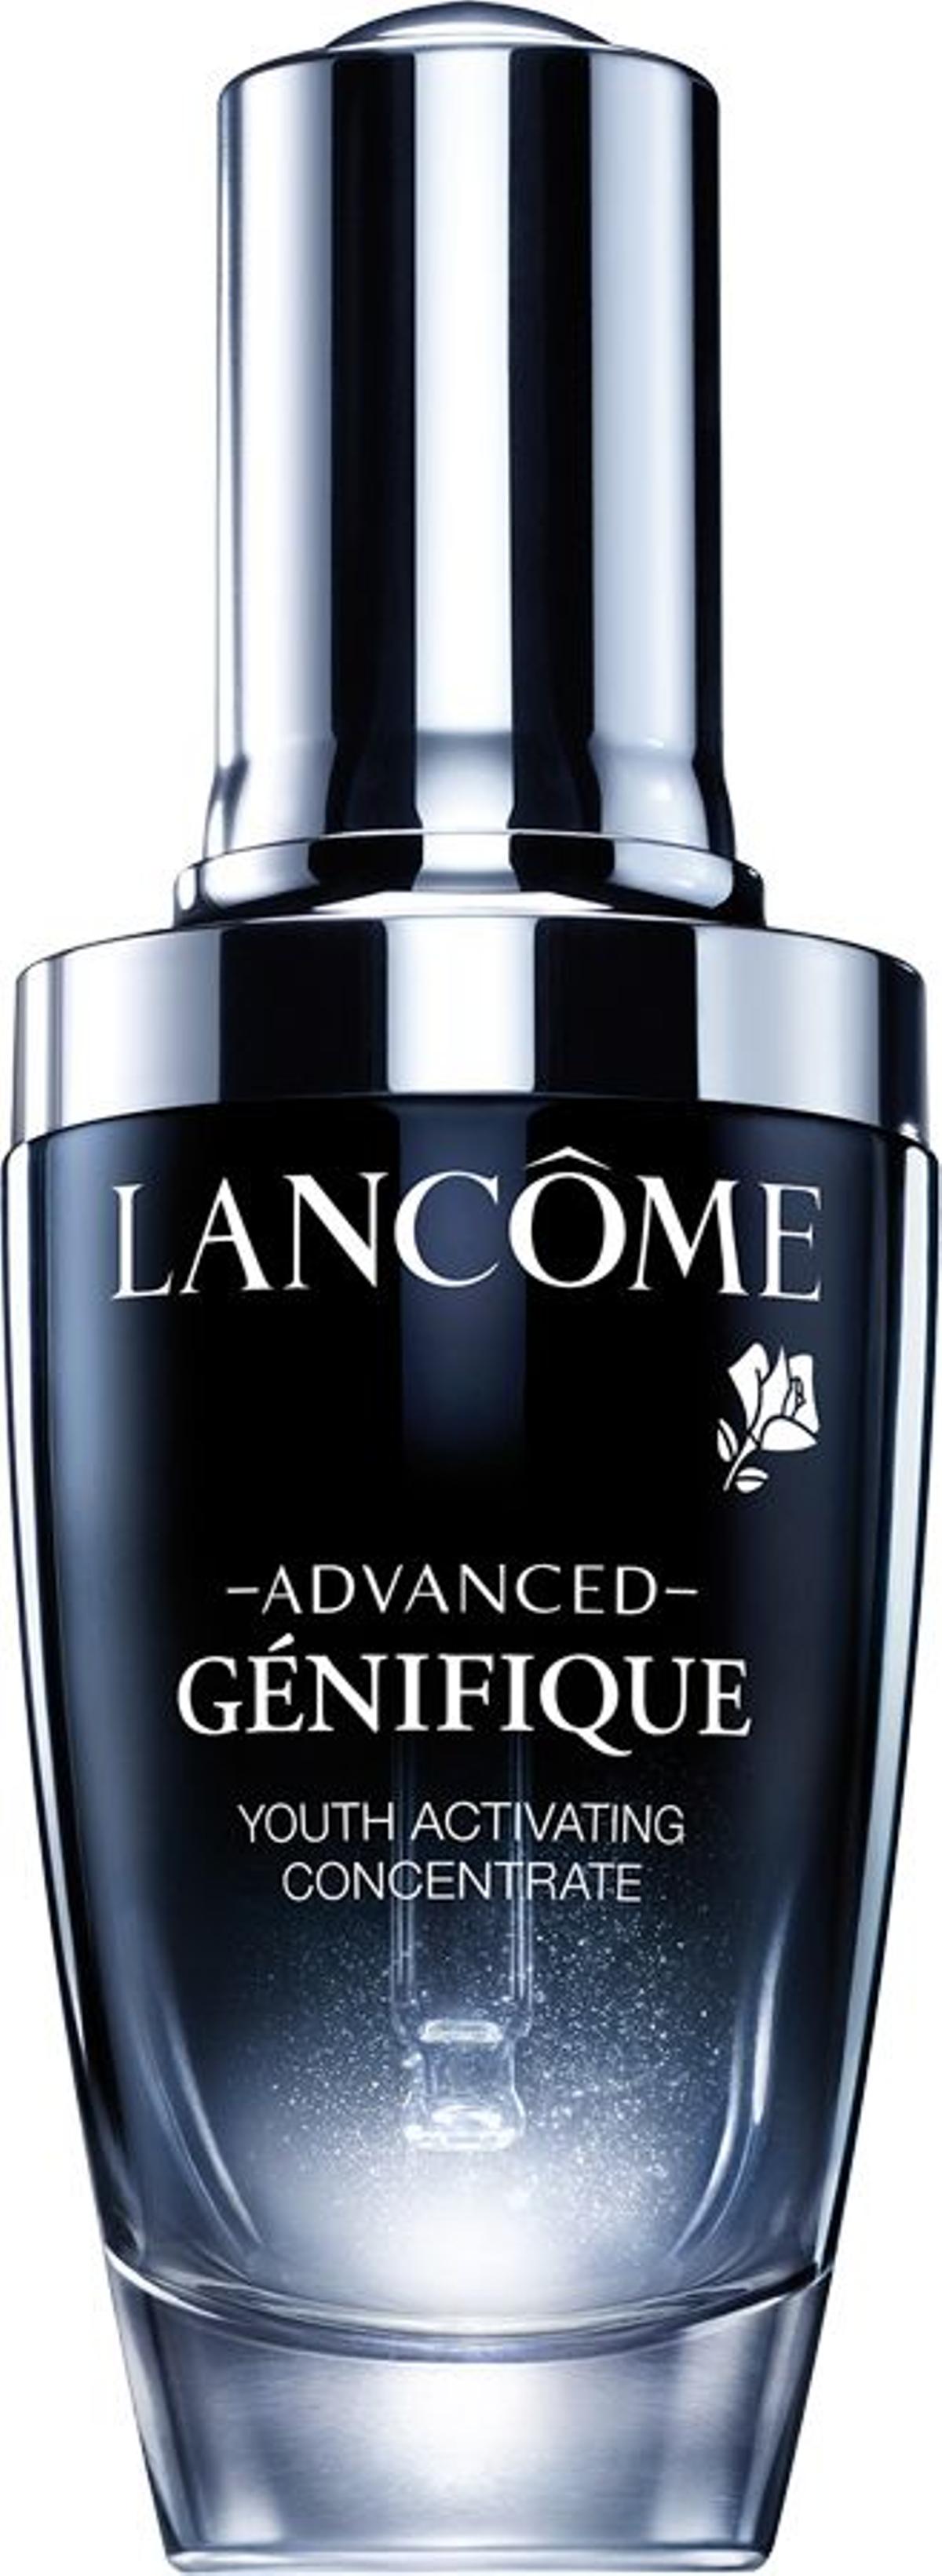 Advanced Génifique, de Lancôme